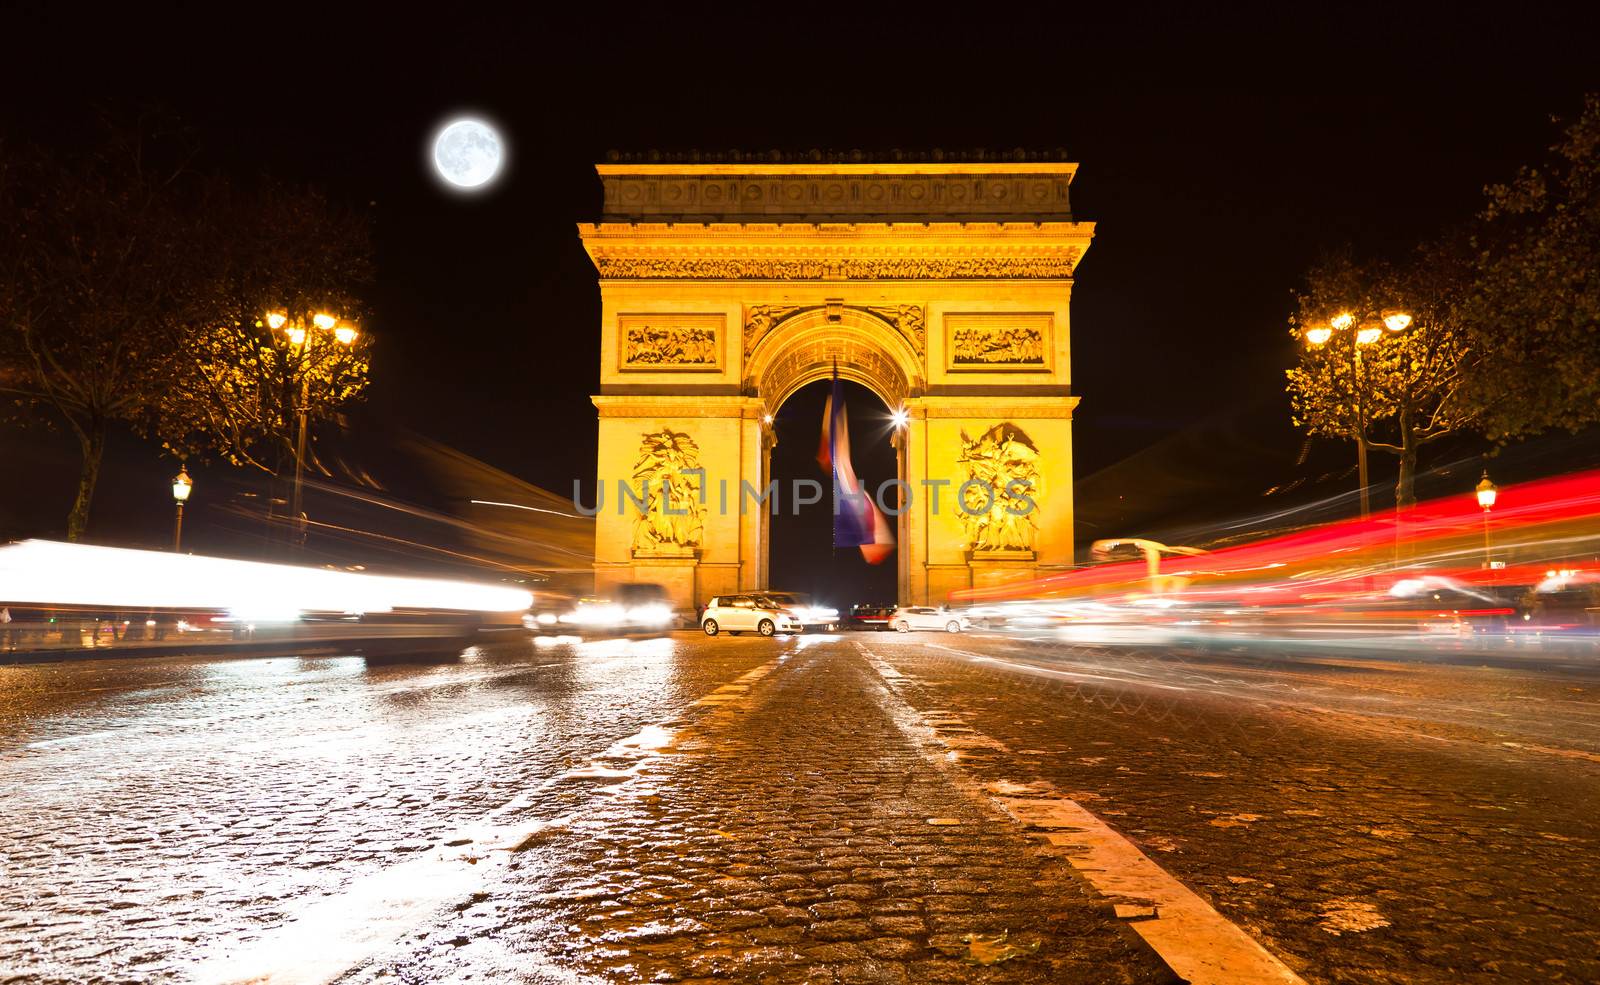 The Arc de Triomphe in Paris illuminated at night. 
